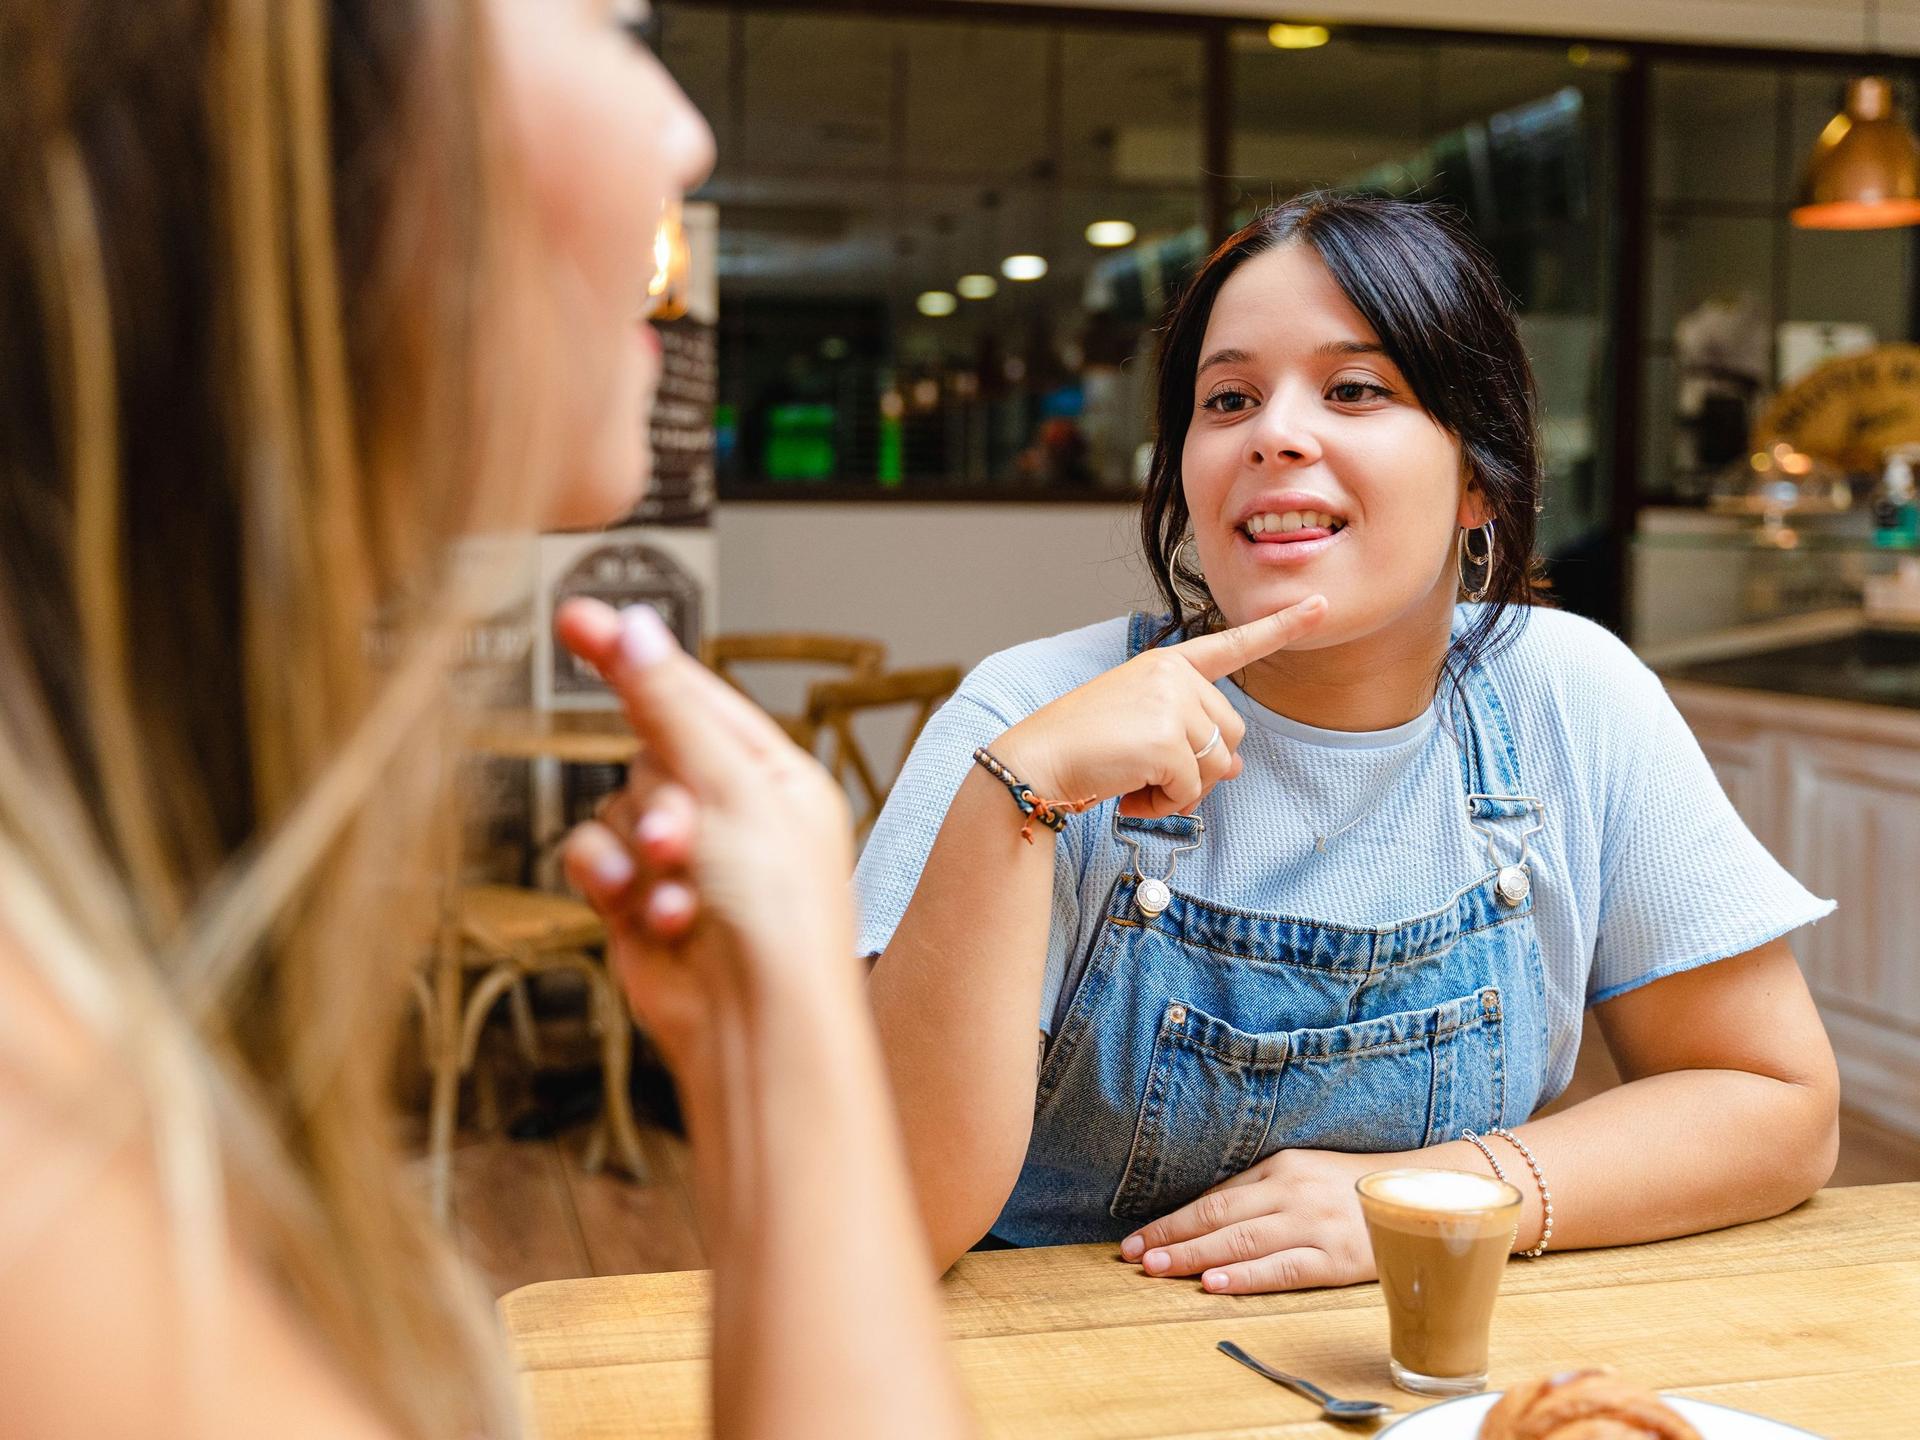 Zwei junge Frauen sitzen in einem Cafe und unterhalten sich in Zeichensprache.